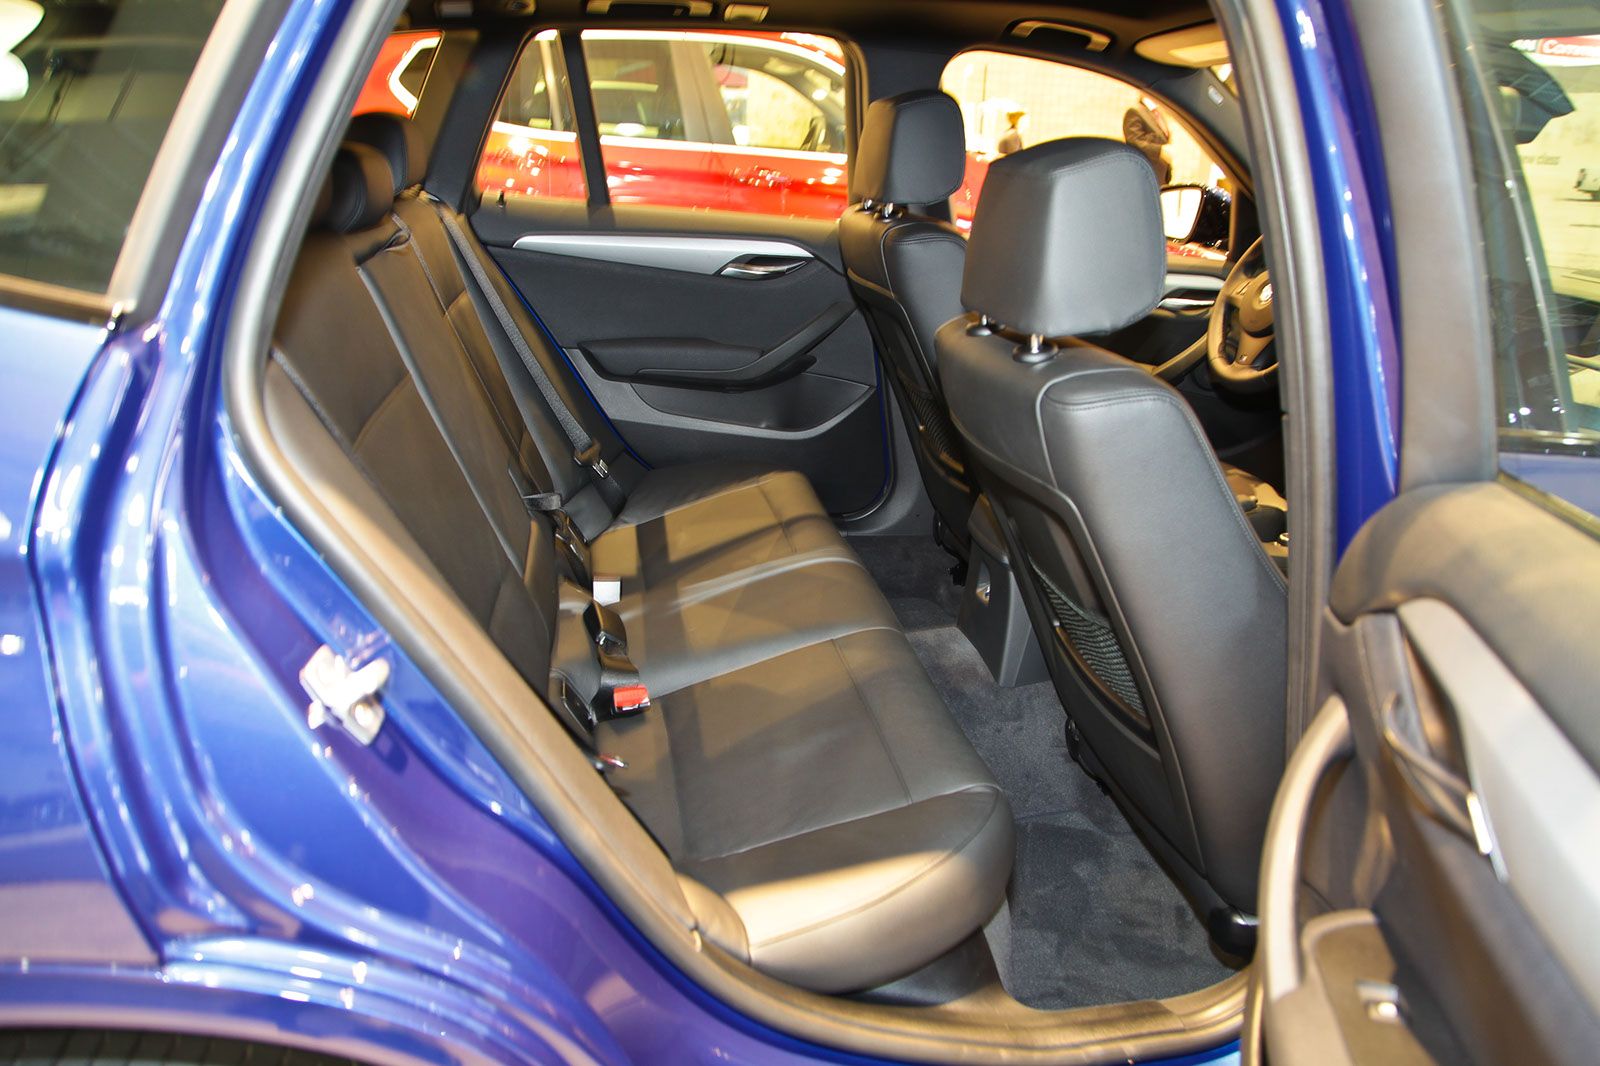 2013 BMW X1